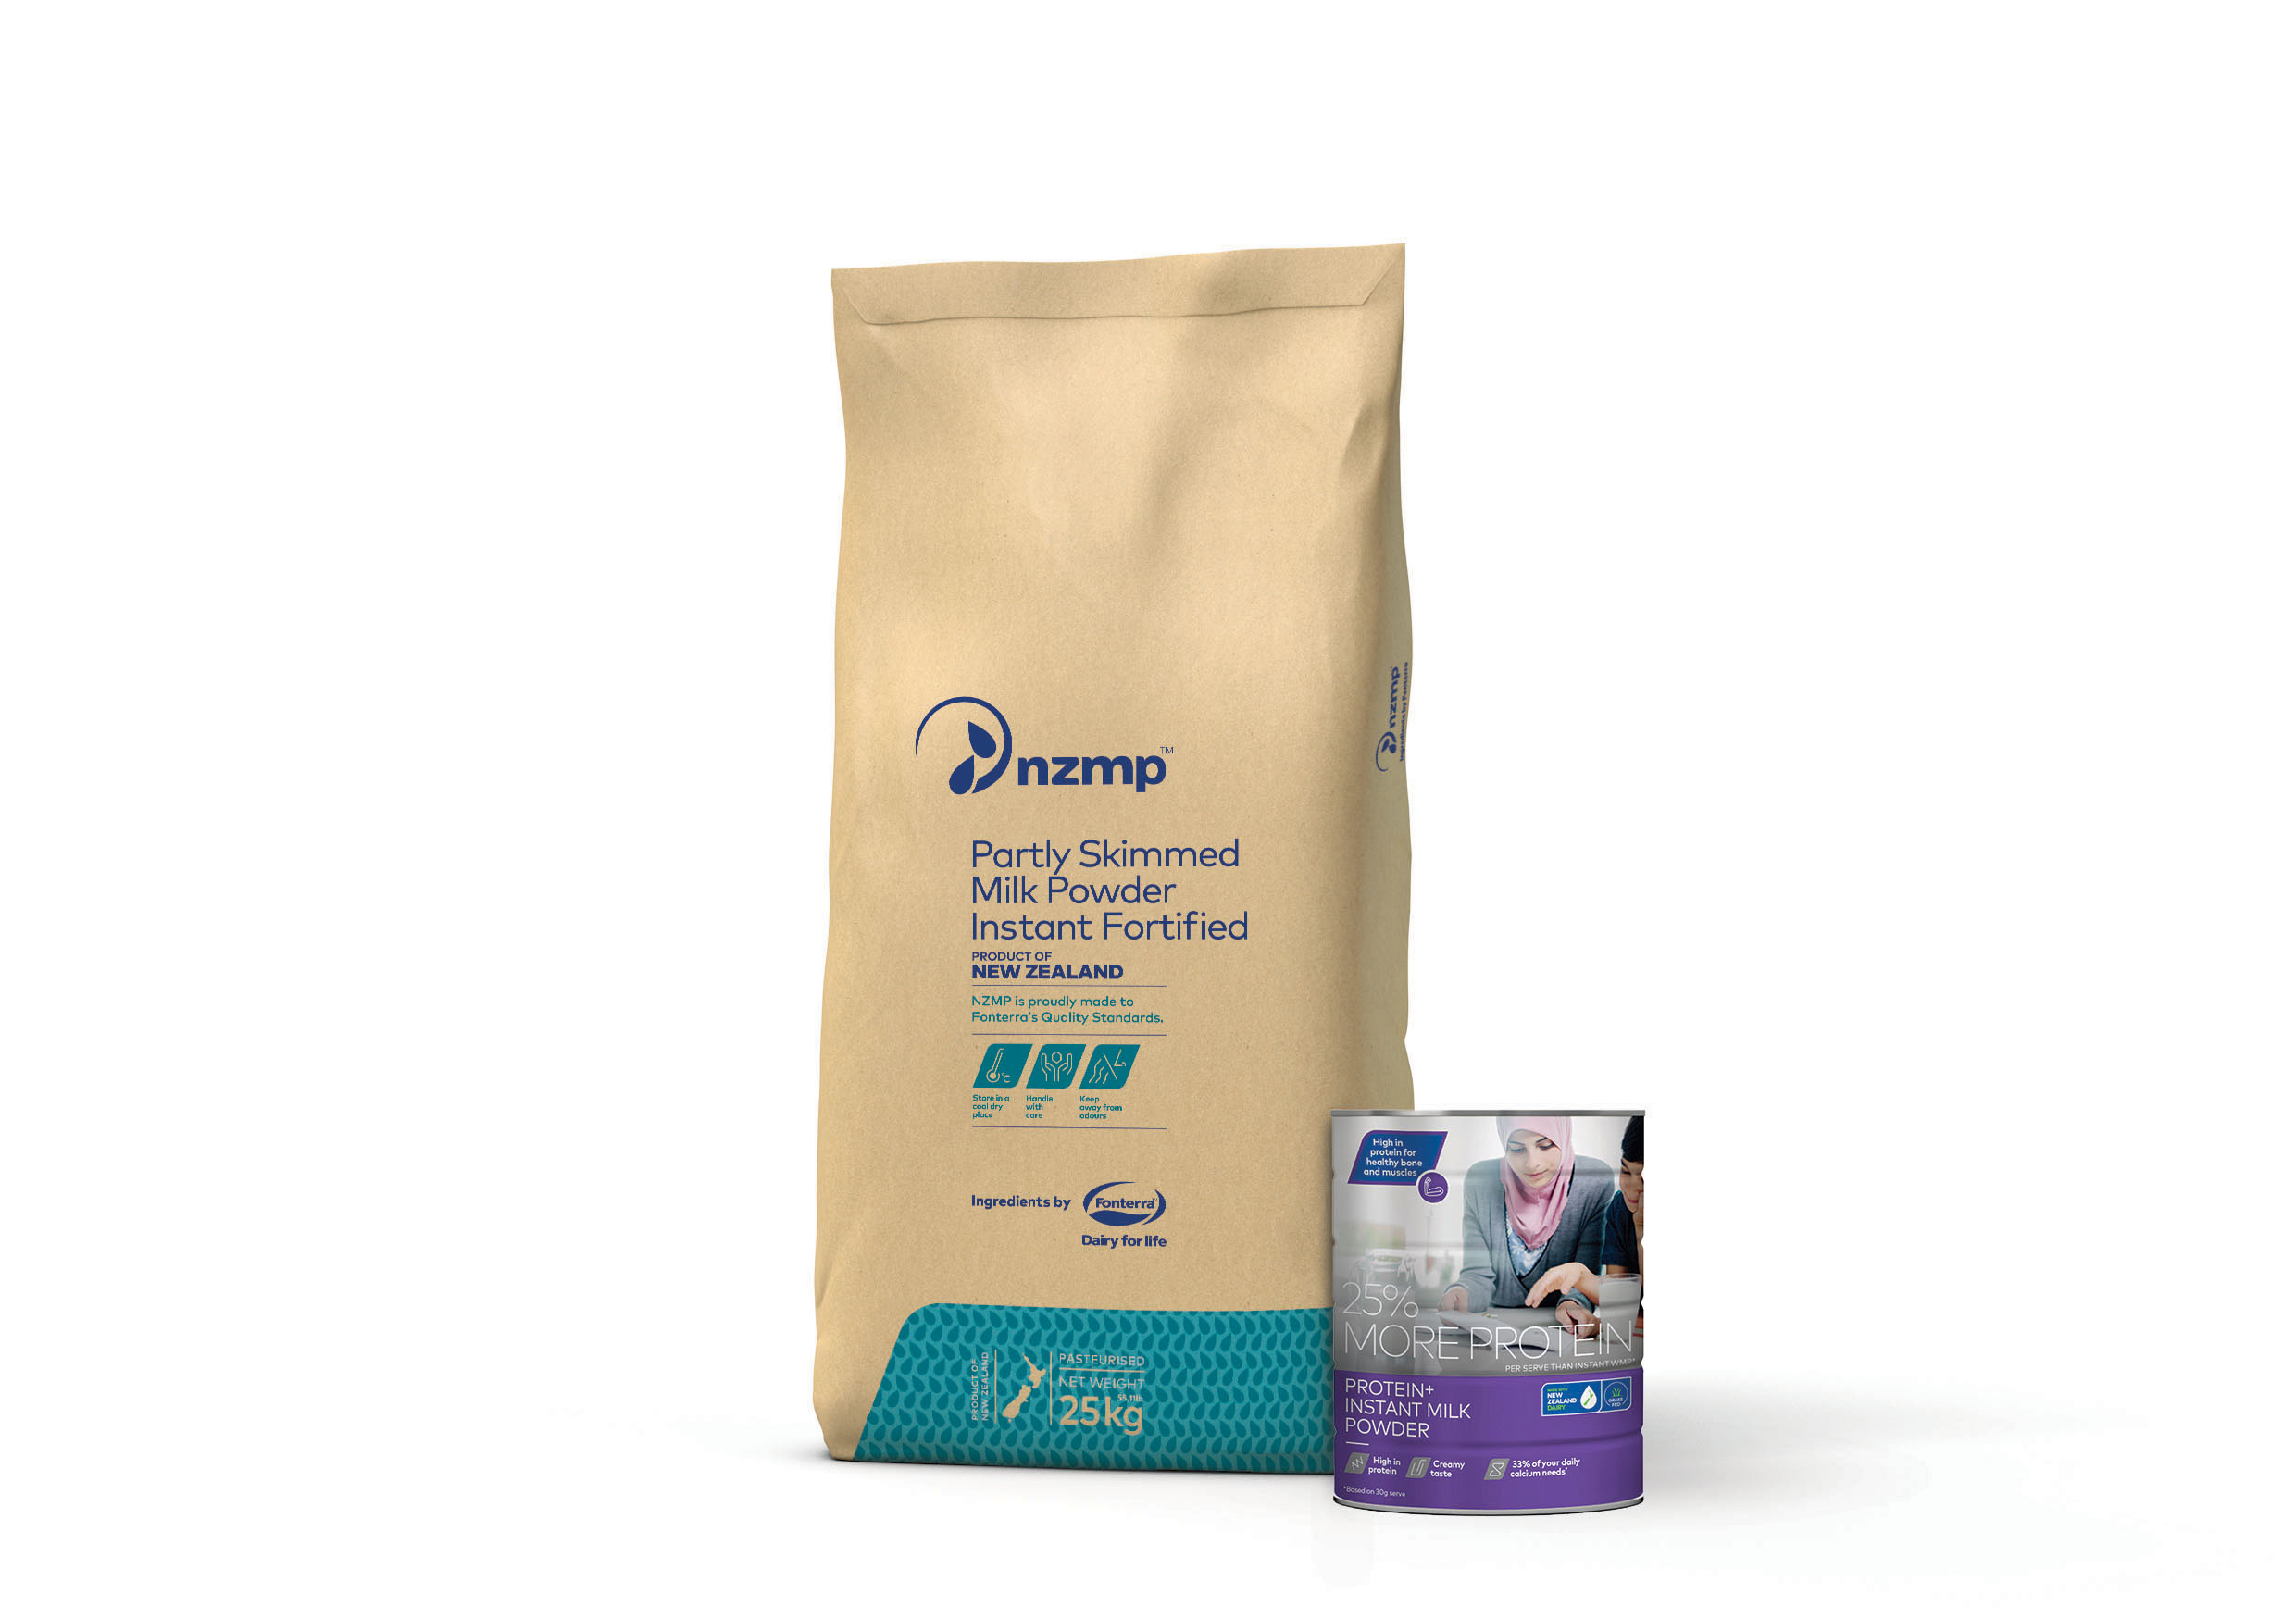 NZMP Protein+ Instant Milk Powder